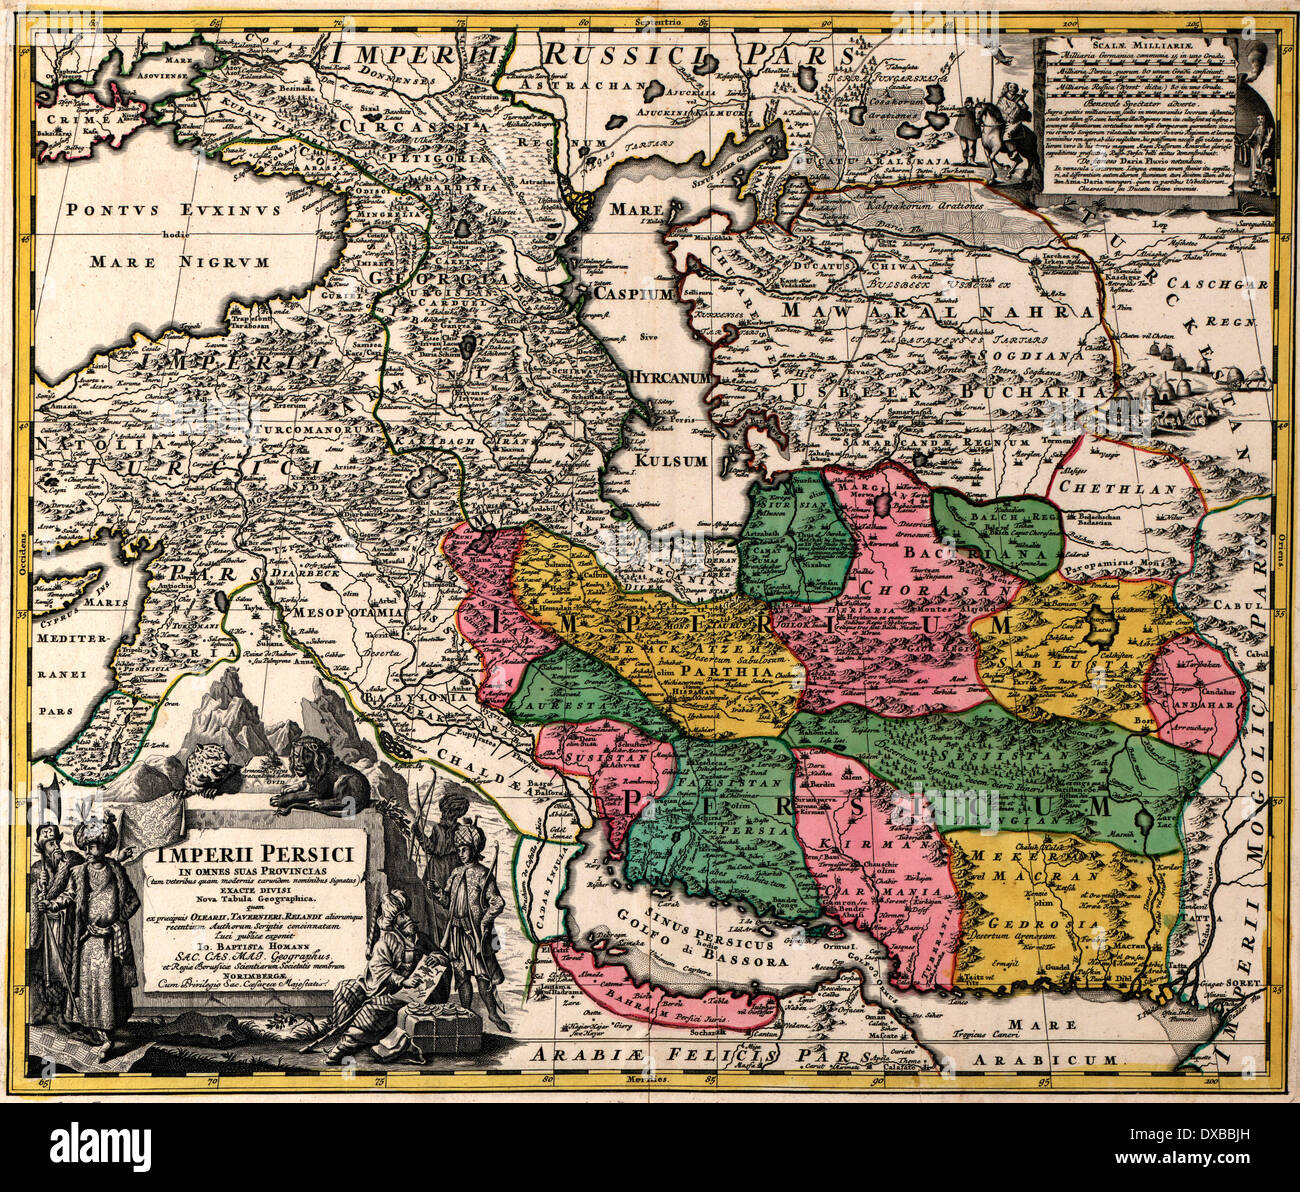 Kaiserliche Persien, 1724 Stockfoto